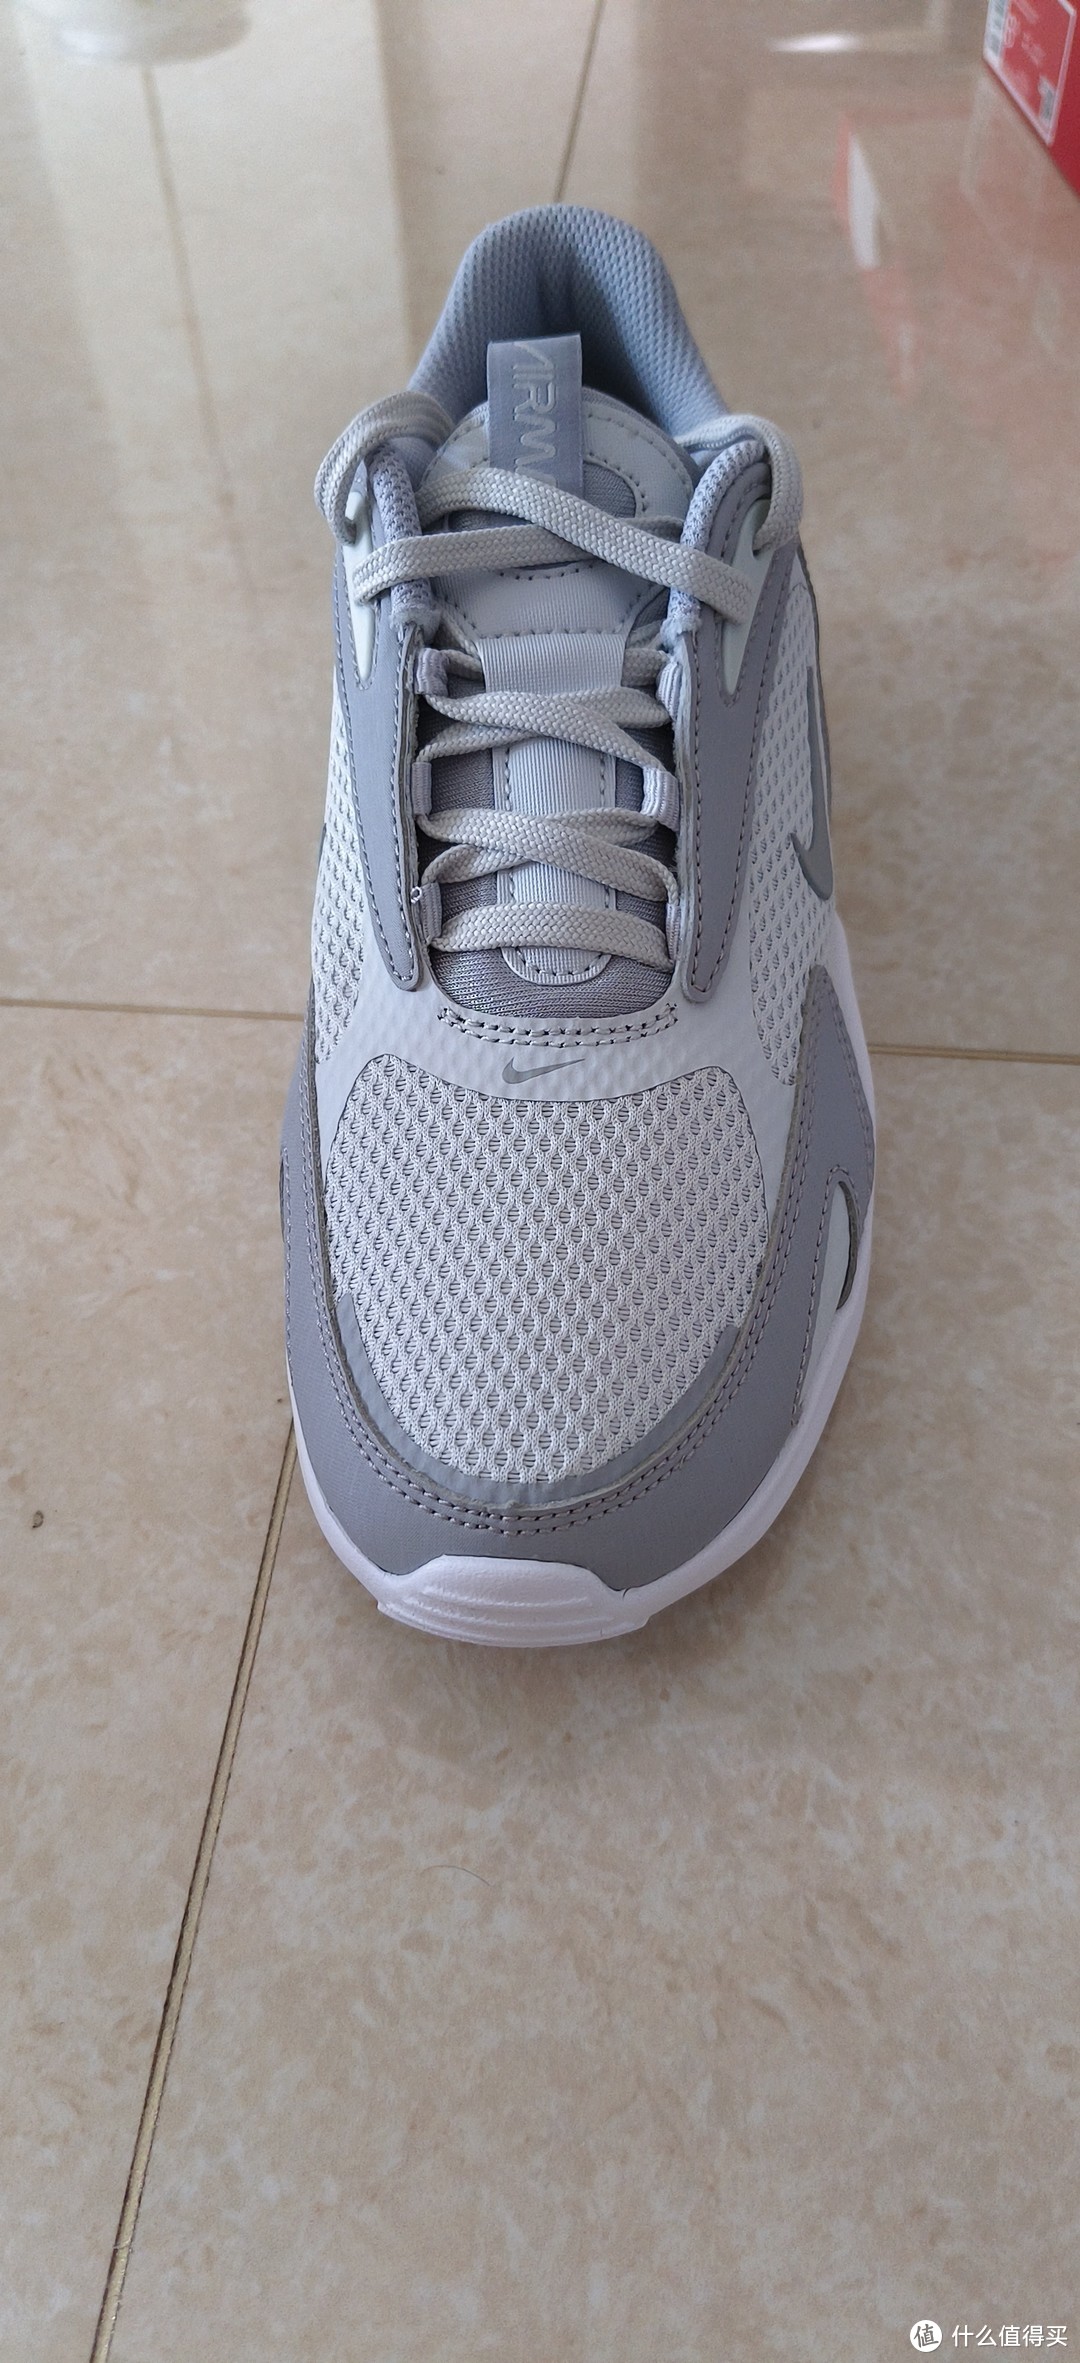 低调内敛 耐克Nike Air Max Bolt 休闲跑步鞋 CU4151-003